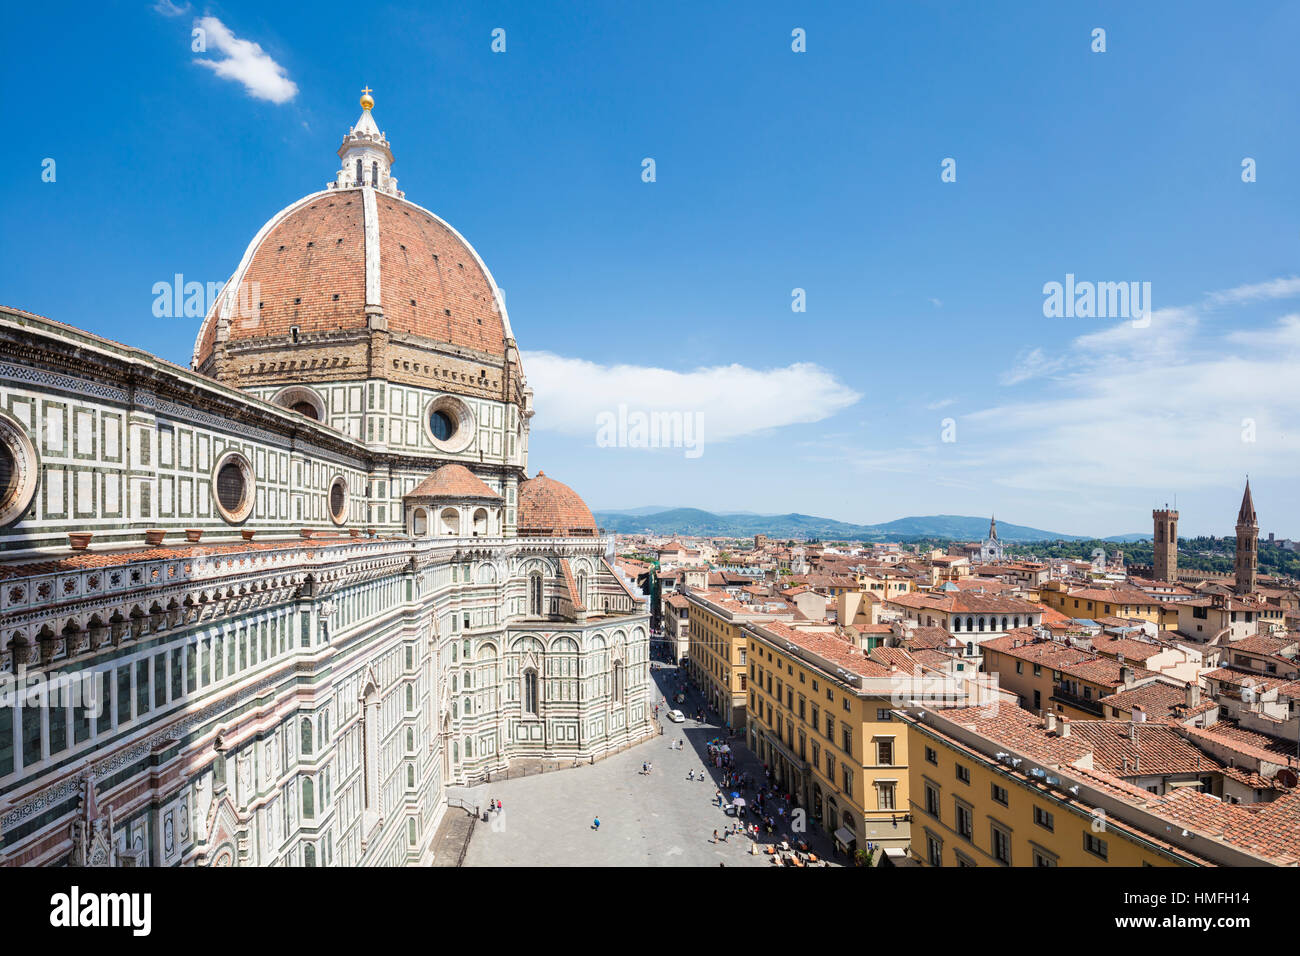 L'ancien Duomo di Firenze construit avec des panneaux de marbre polychrome et la coupole de Brunelleschi, Florence, Toscane, Italie Banque D'Images